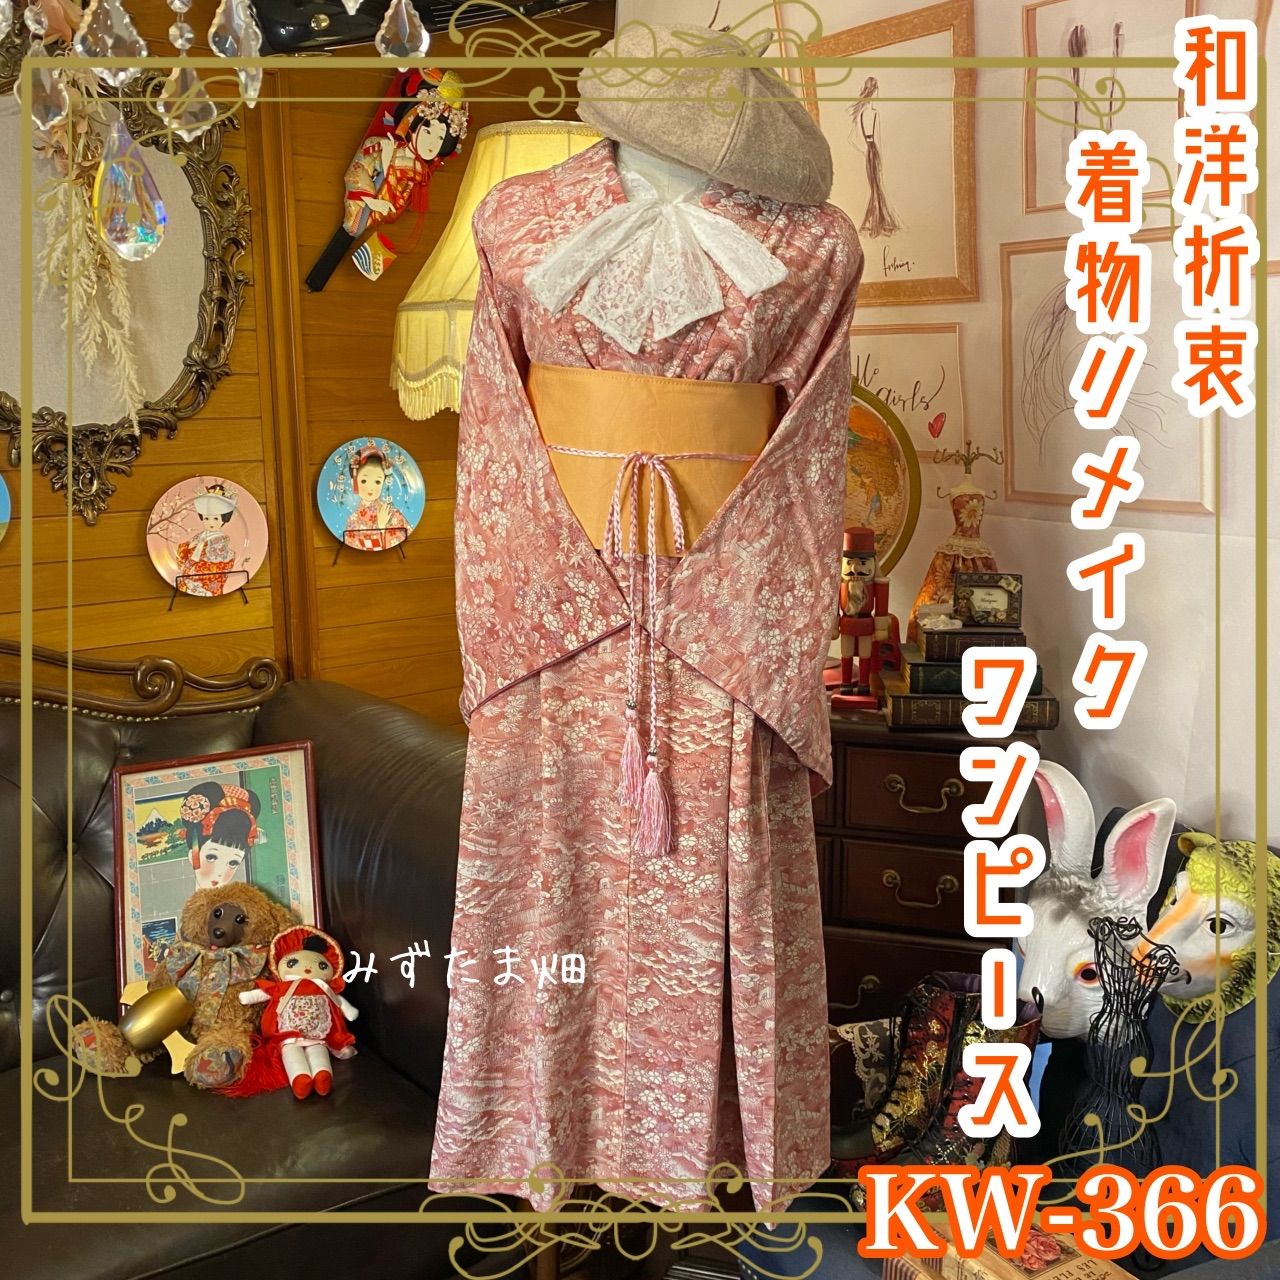 和洋折衷 着物 リメイク ワンピース ドレス 帯サッシュベルト レトロ 古着 和 モダン 素敵な和花柄 ハンドメイド KW-366 - メルカリ